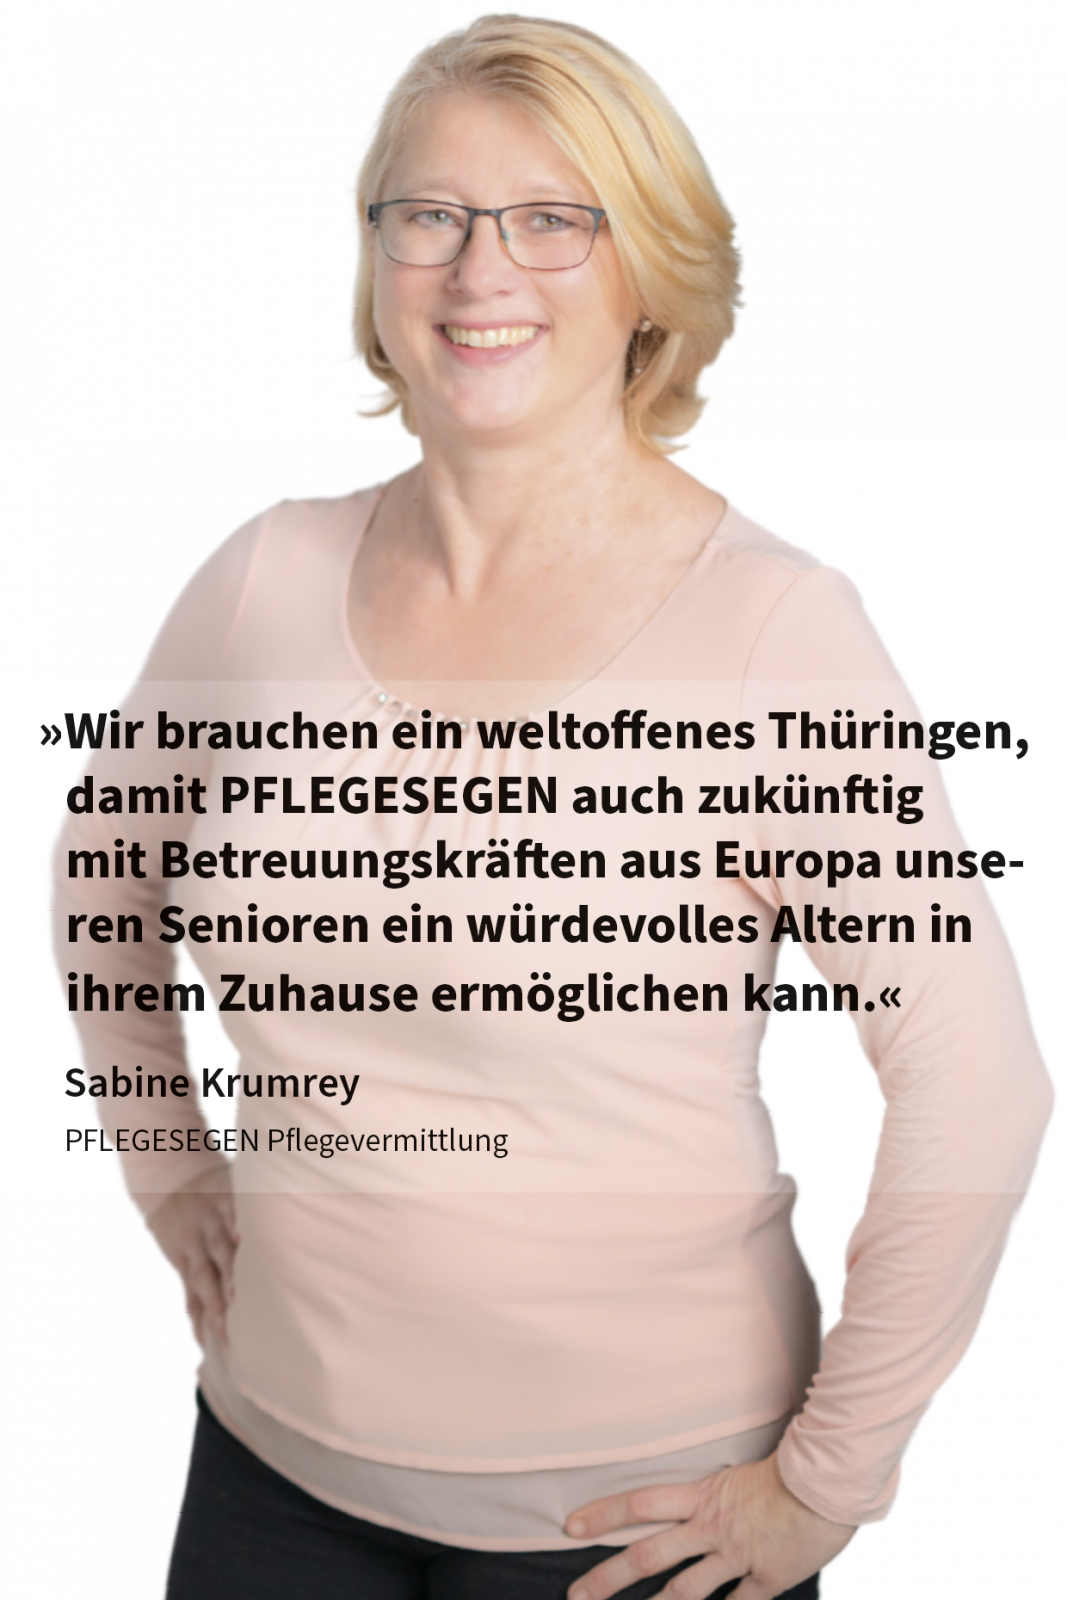 Wir brauchen ein weltoffenes Thüringen, damit PFLEGESEGEN auch zukünftig mit Betreuungskräften aus Europa unseren Senioren ein würdevolles Altern in ihrem Zuhause ermöglichen kann.